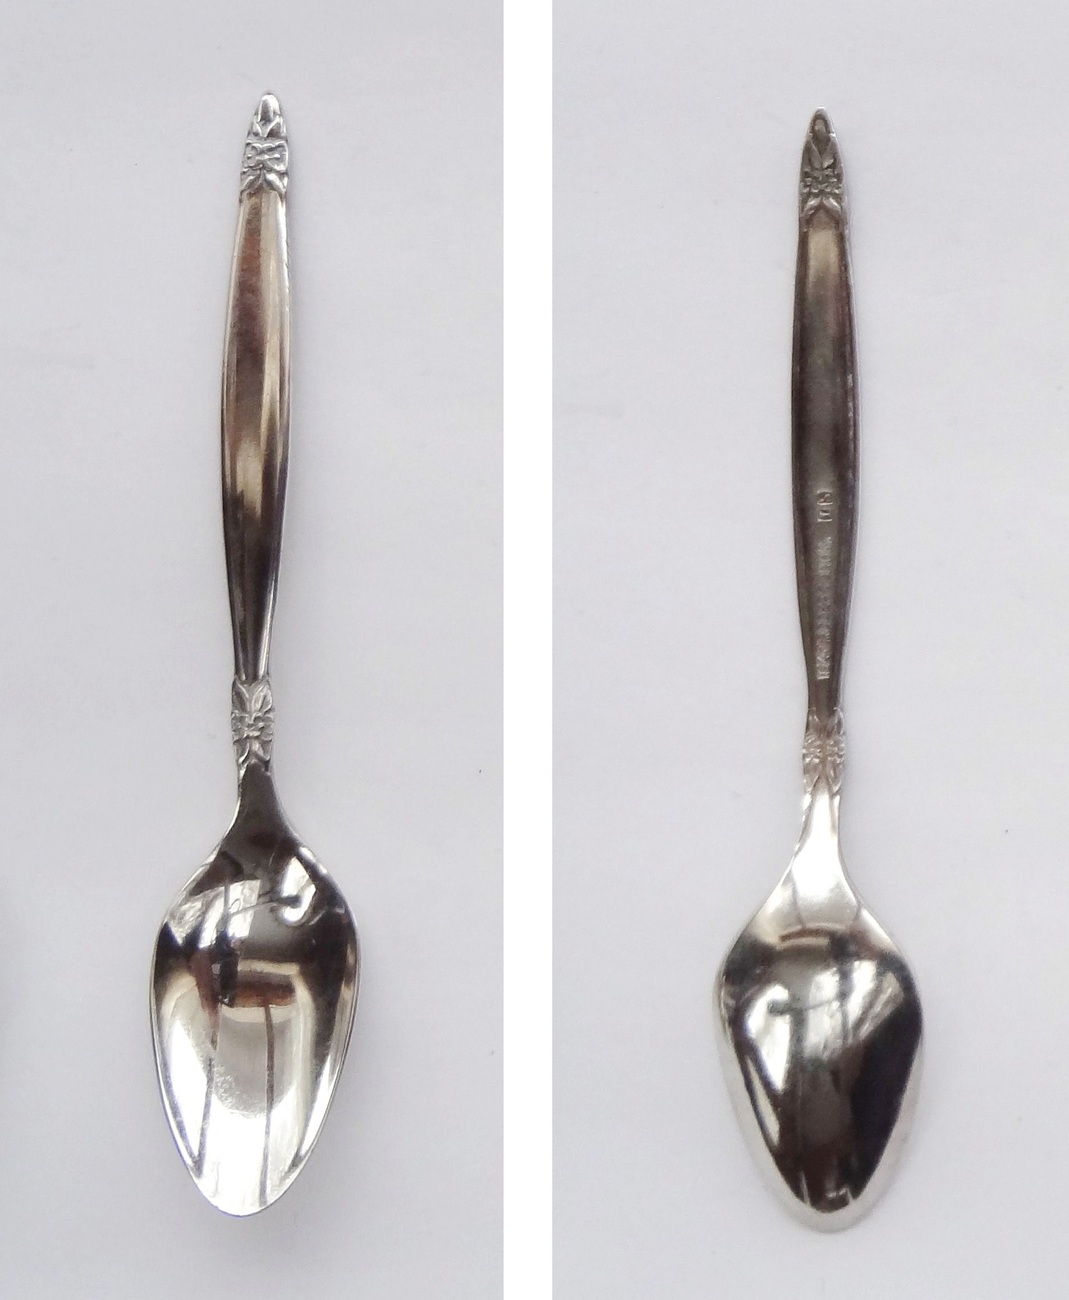 1847 Rogers Brothers Sugar Spoon Flatware Cutlery Tableware - $1.49